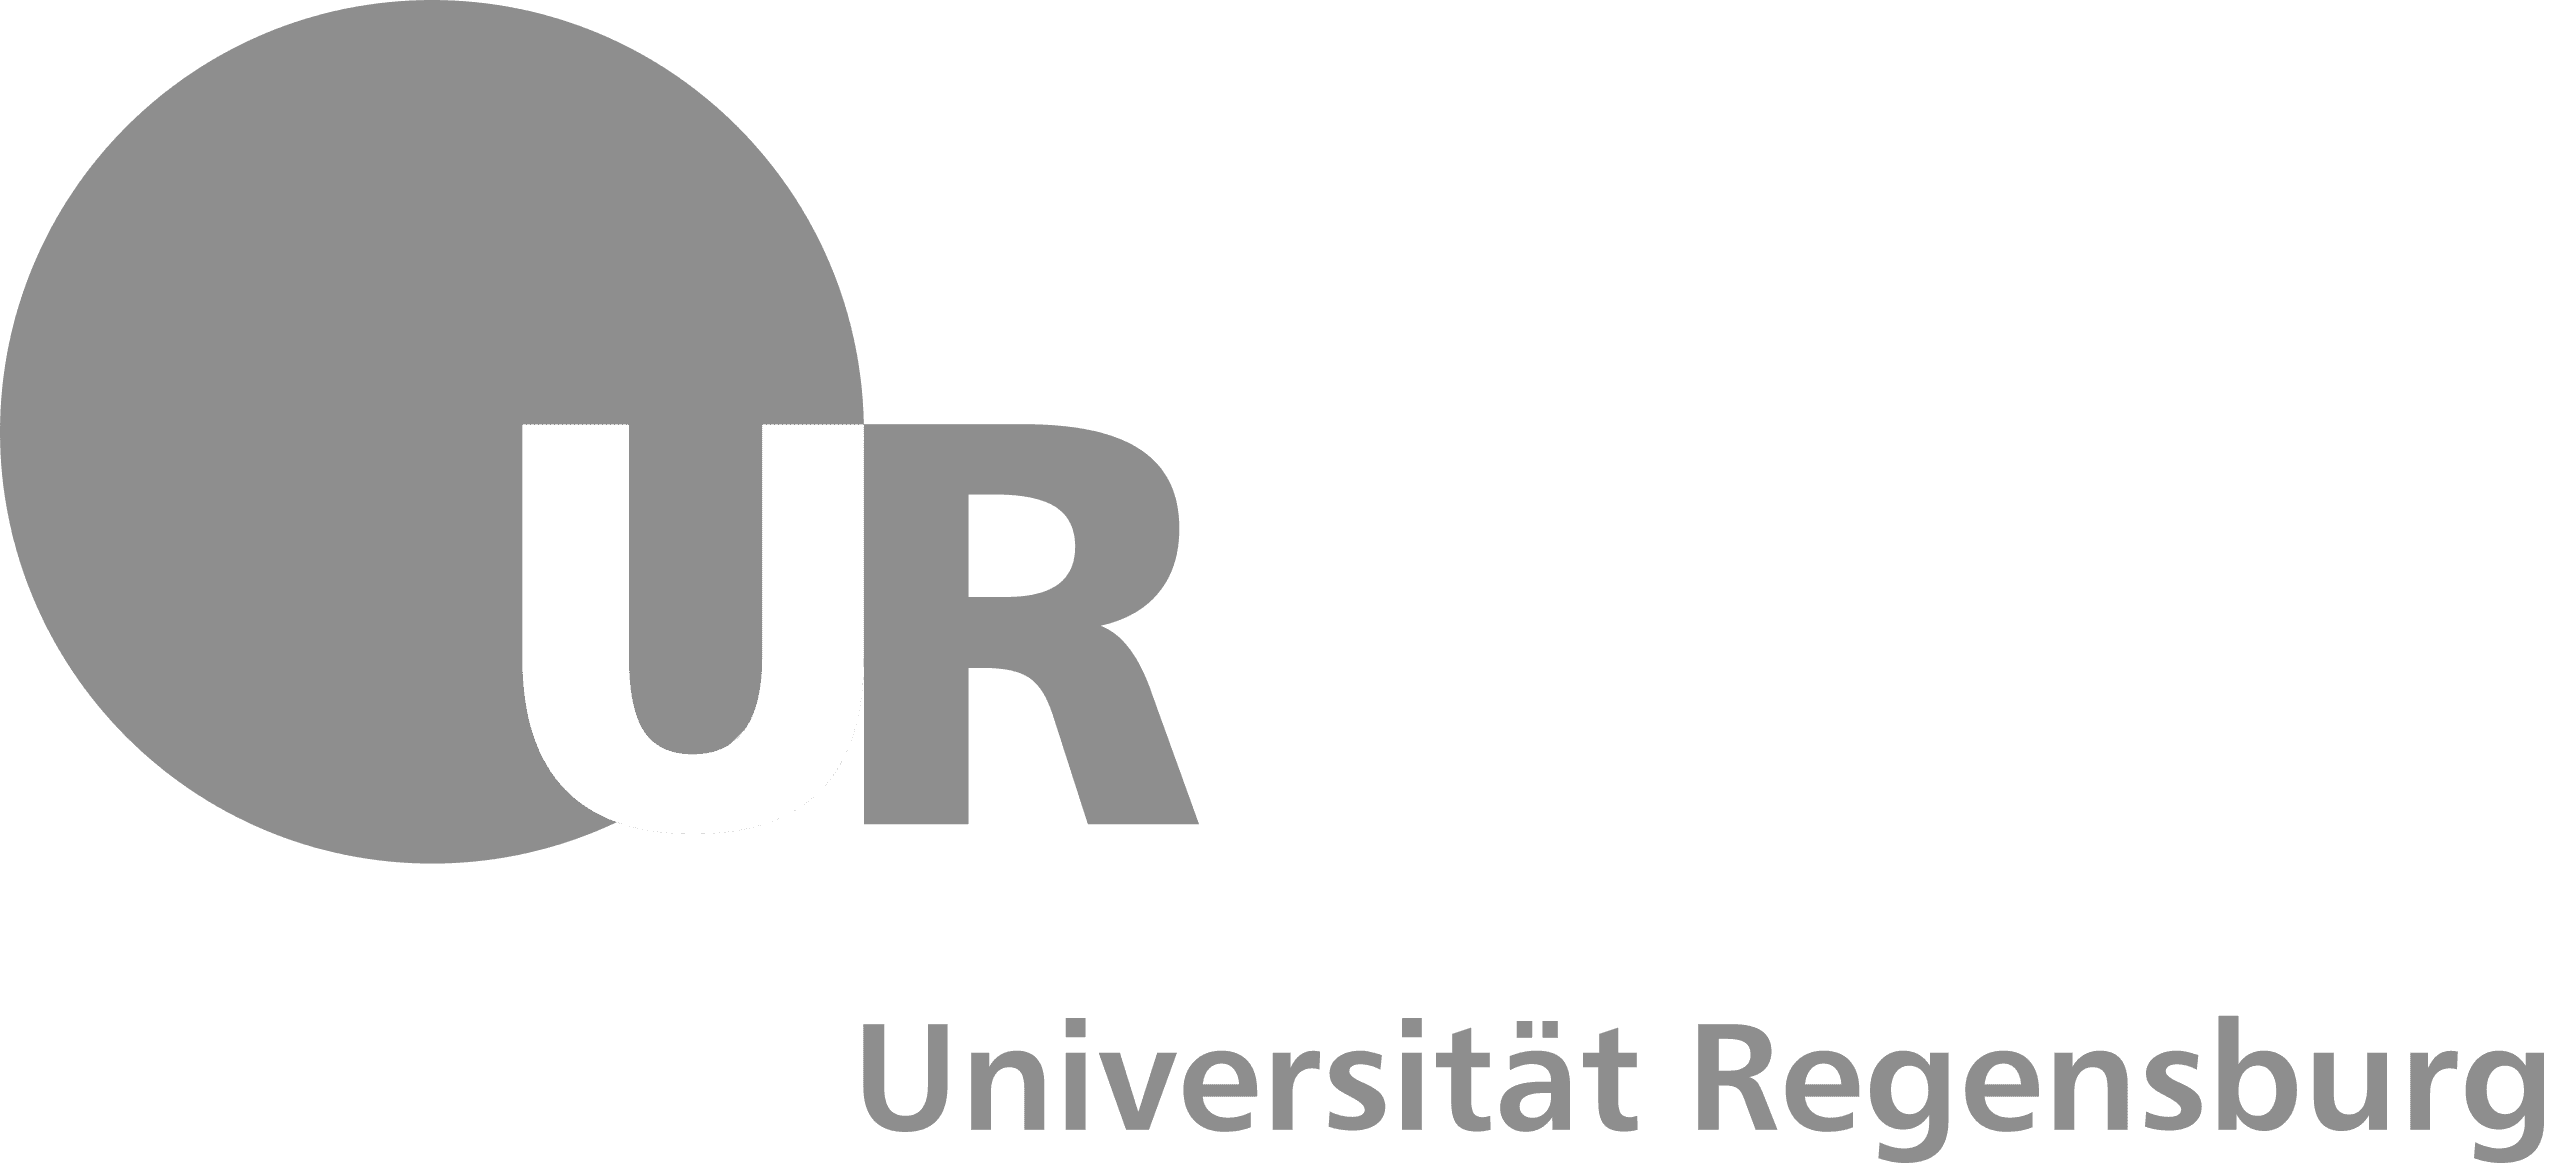 universitat-regensburg-36da64bc96-cover-picture